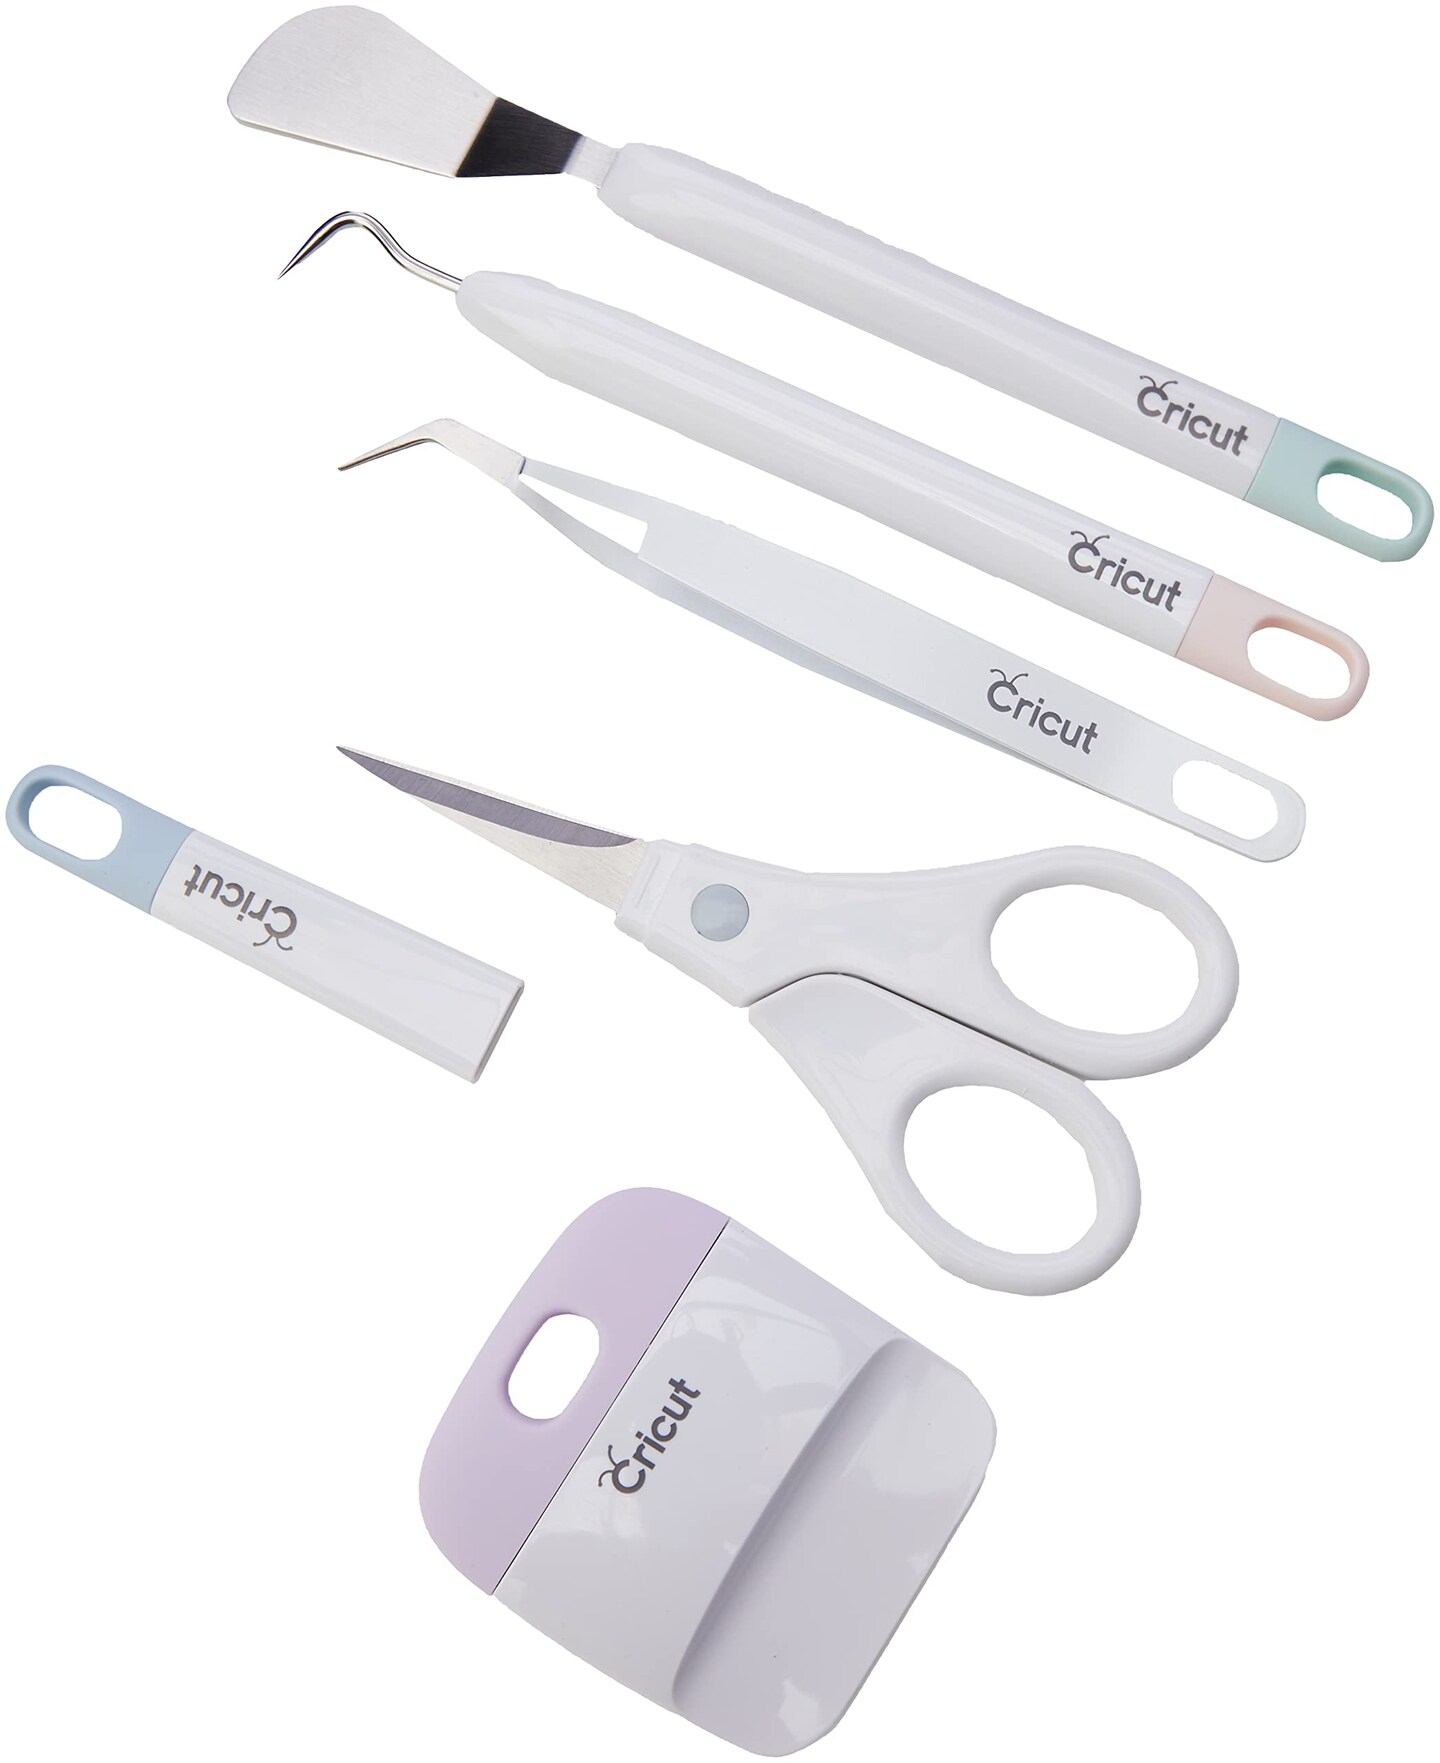  Cricut Basic Tool Set - Precision Tool Kit for